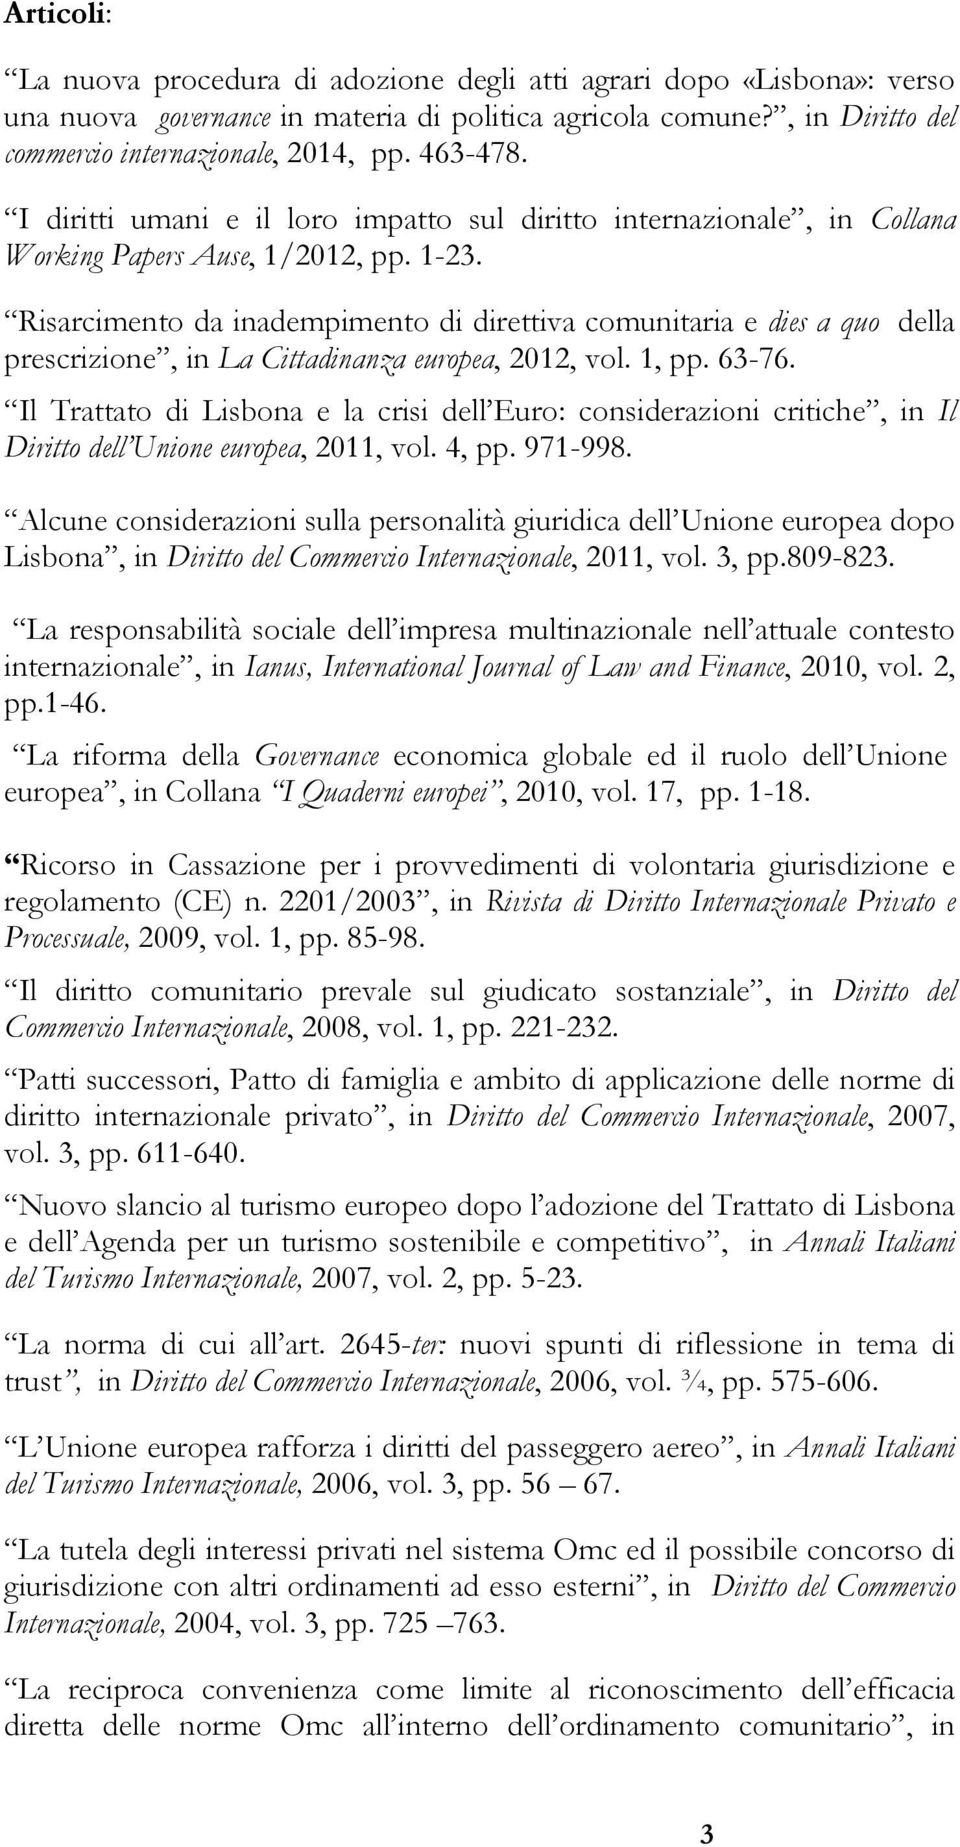 Risarcimento da inadempimento di direttiva comunitaria e dies a quo della prescrizione, in La Cittadinanza europea, 2012, vol. 1, pp. 63-76.